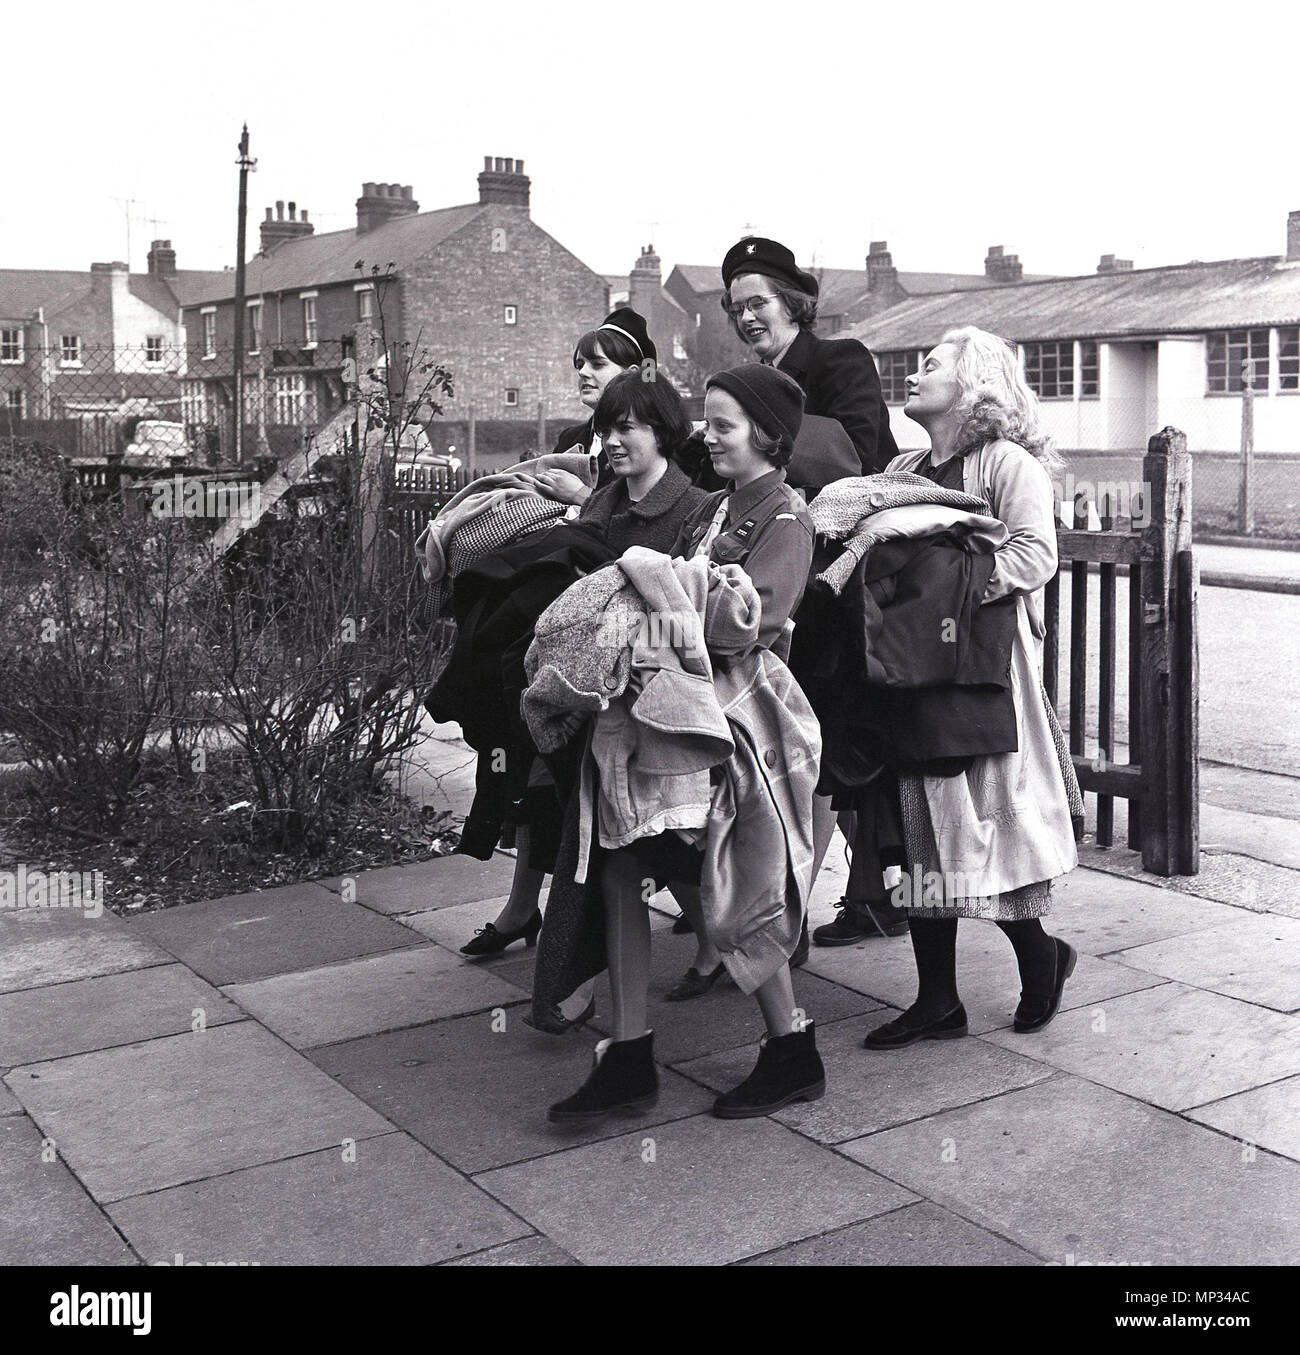 1960, l'Angleterre, l'image montre un groupe de guides réunissant les articles de vêtements de seconde main pour être vendu à une salle communautaire locale. Avant que les boutiques de bienfaisance, l'église locale et des salles communautaires lieu de vente fait don de vêtements et de ménage bric-à-brac. Banque D'Images